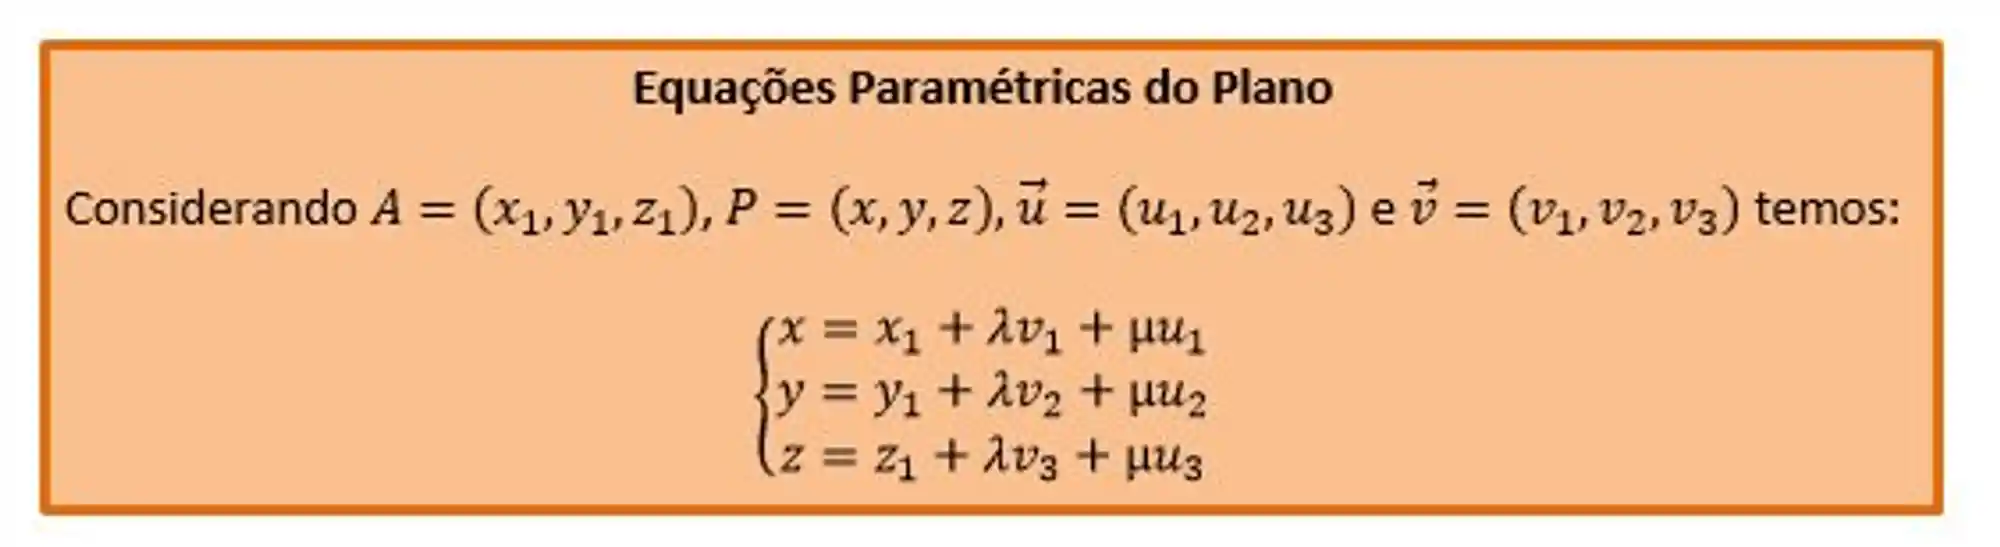 Equações Paramétricas do Plano